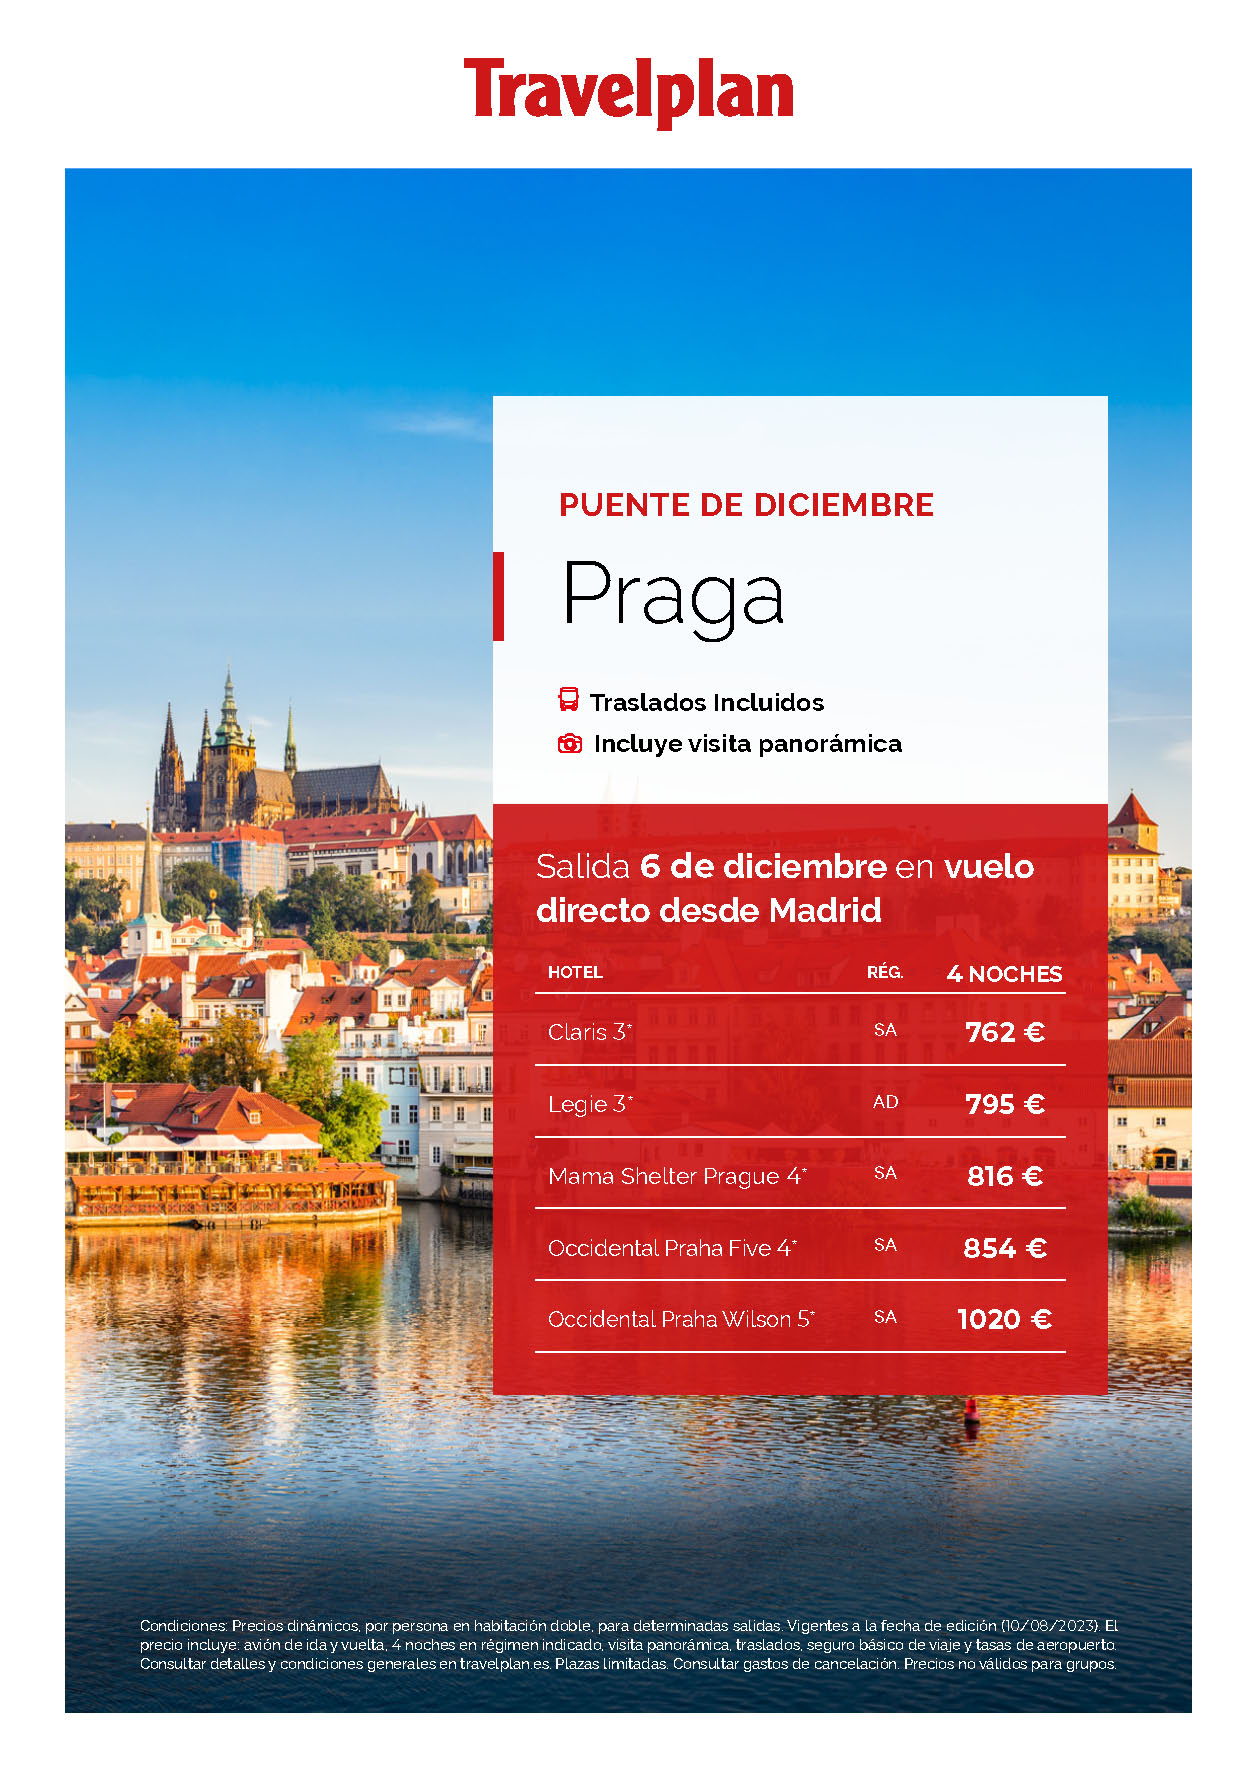 Oferta Travelplan Puente de Diciembre 2023 estancia en Praga 5 dias salida 6 Diciembre vuelo directo desde Madrid